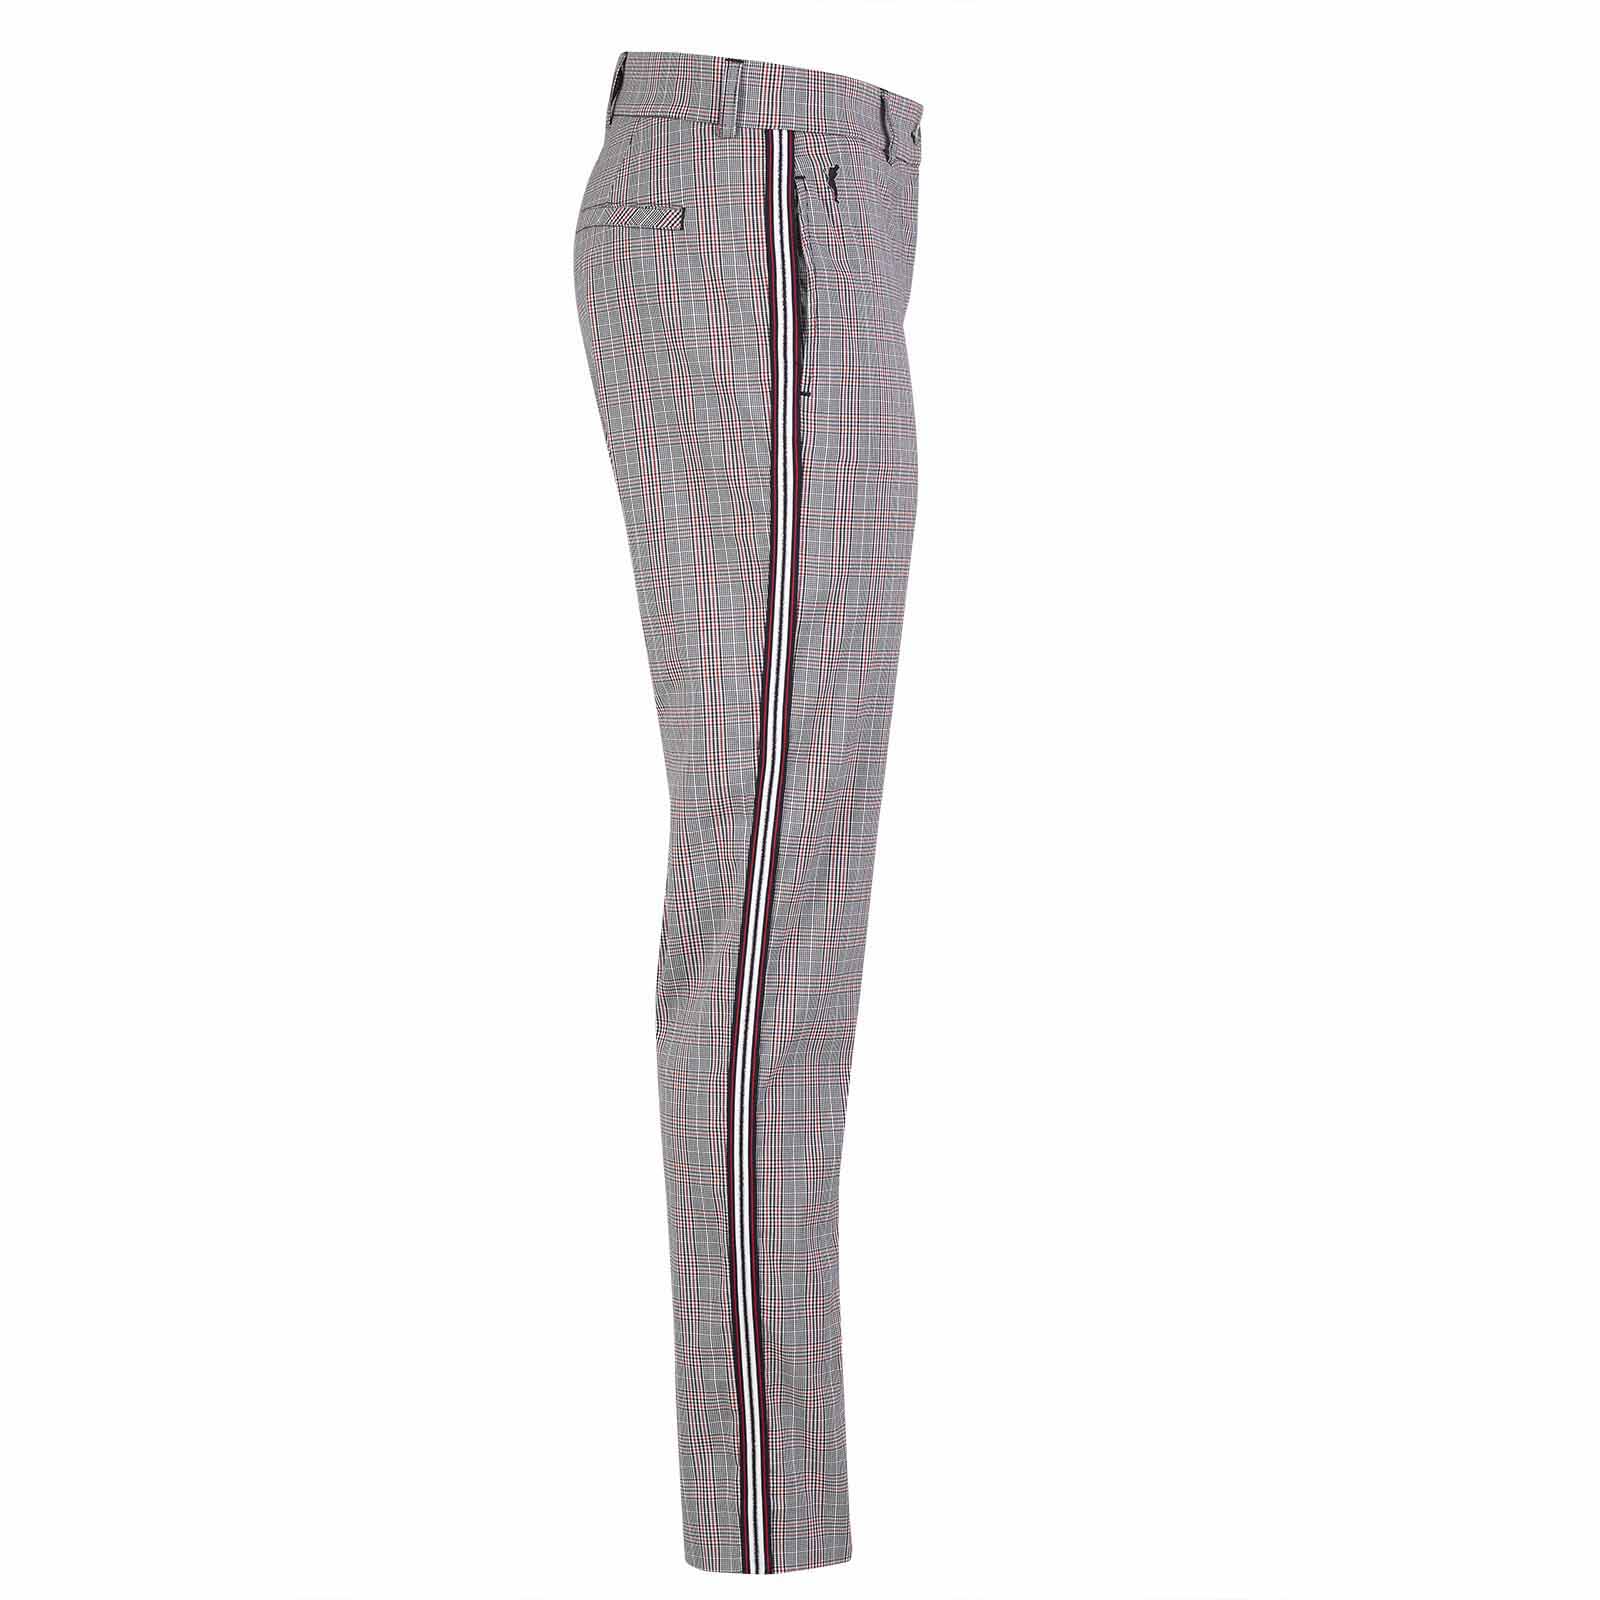 Dame-7/8-golfbukser af stretchmateriale med ternet mønster i regular fit